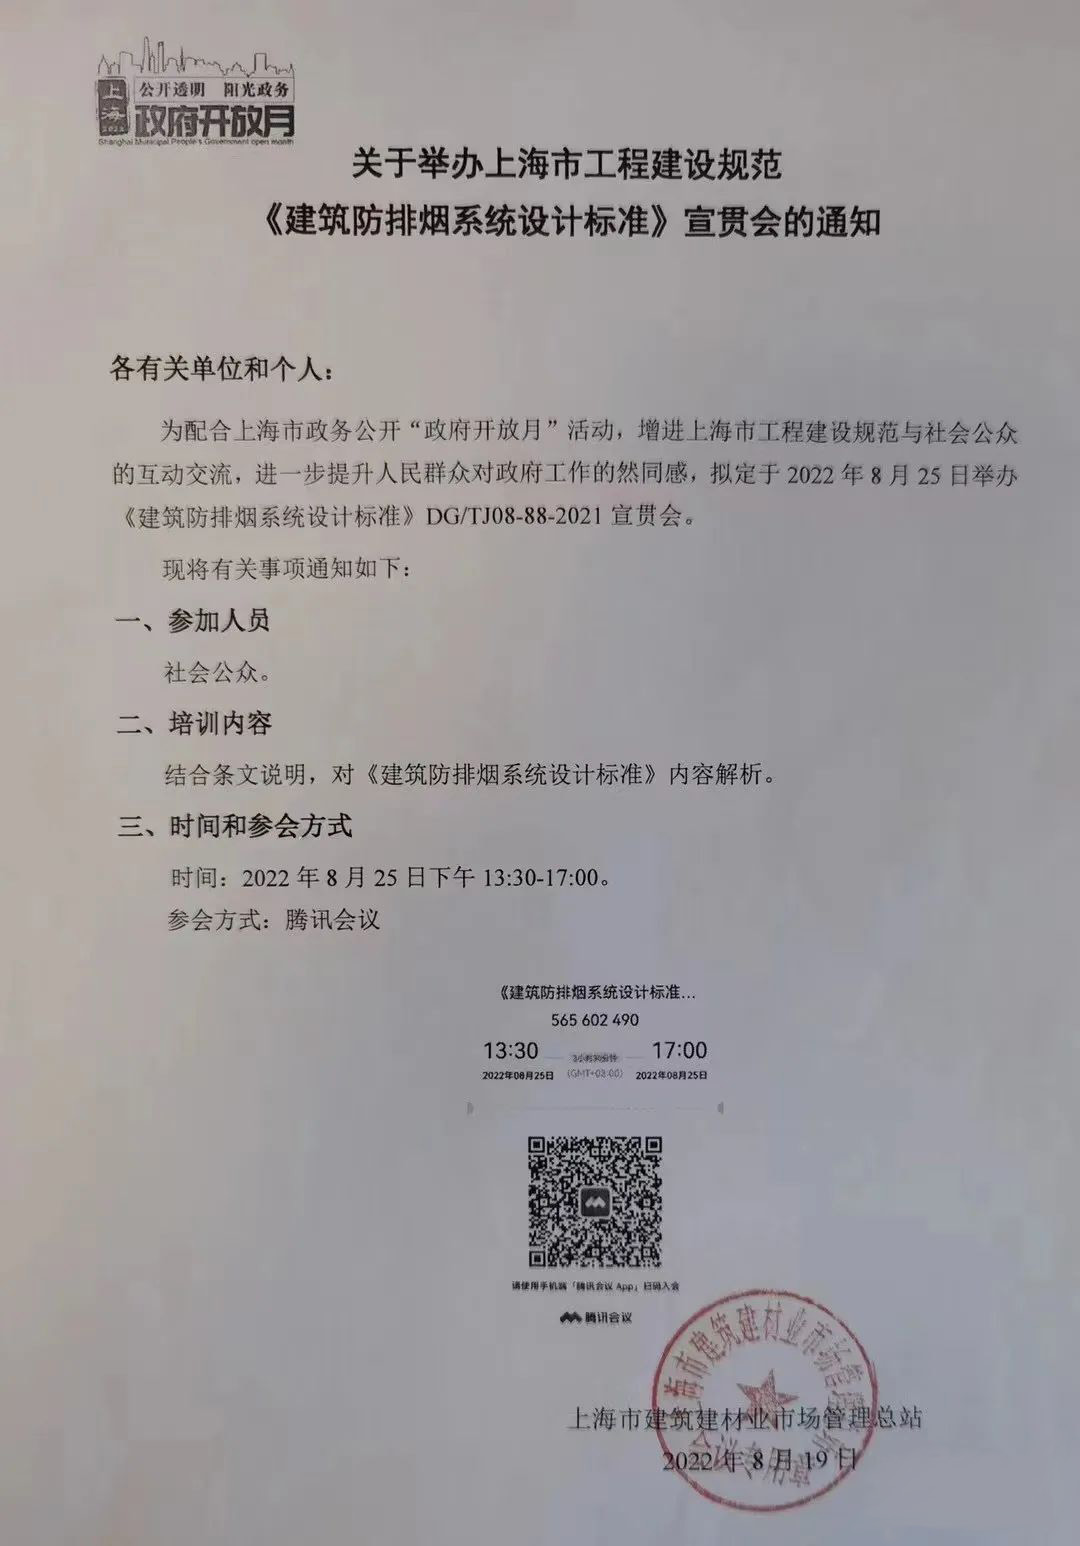 宣贯消防：关于举办上海市工程建设规范《建筑防排烟系统设计标准》宣贯会的通知